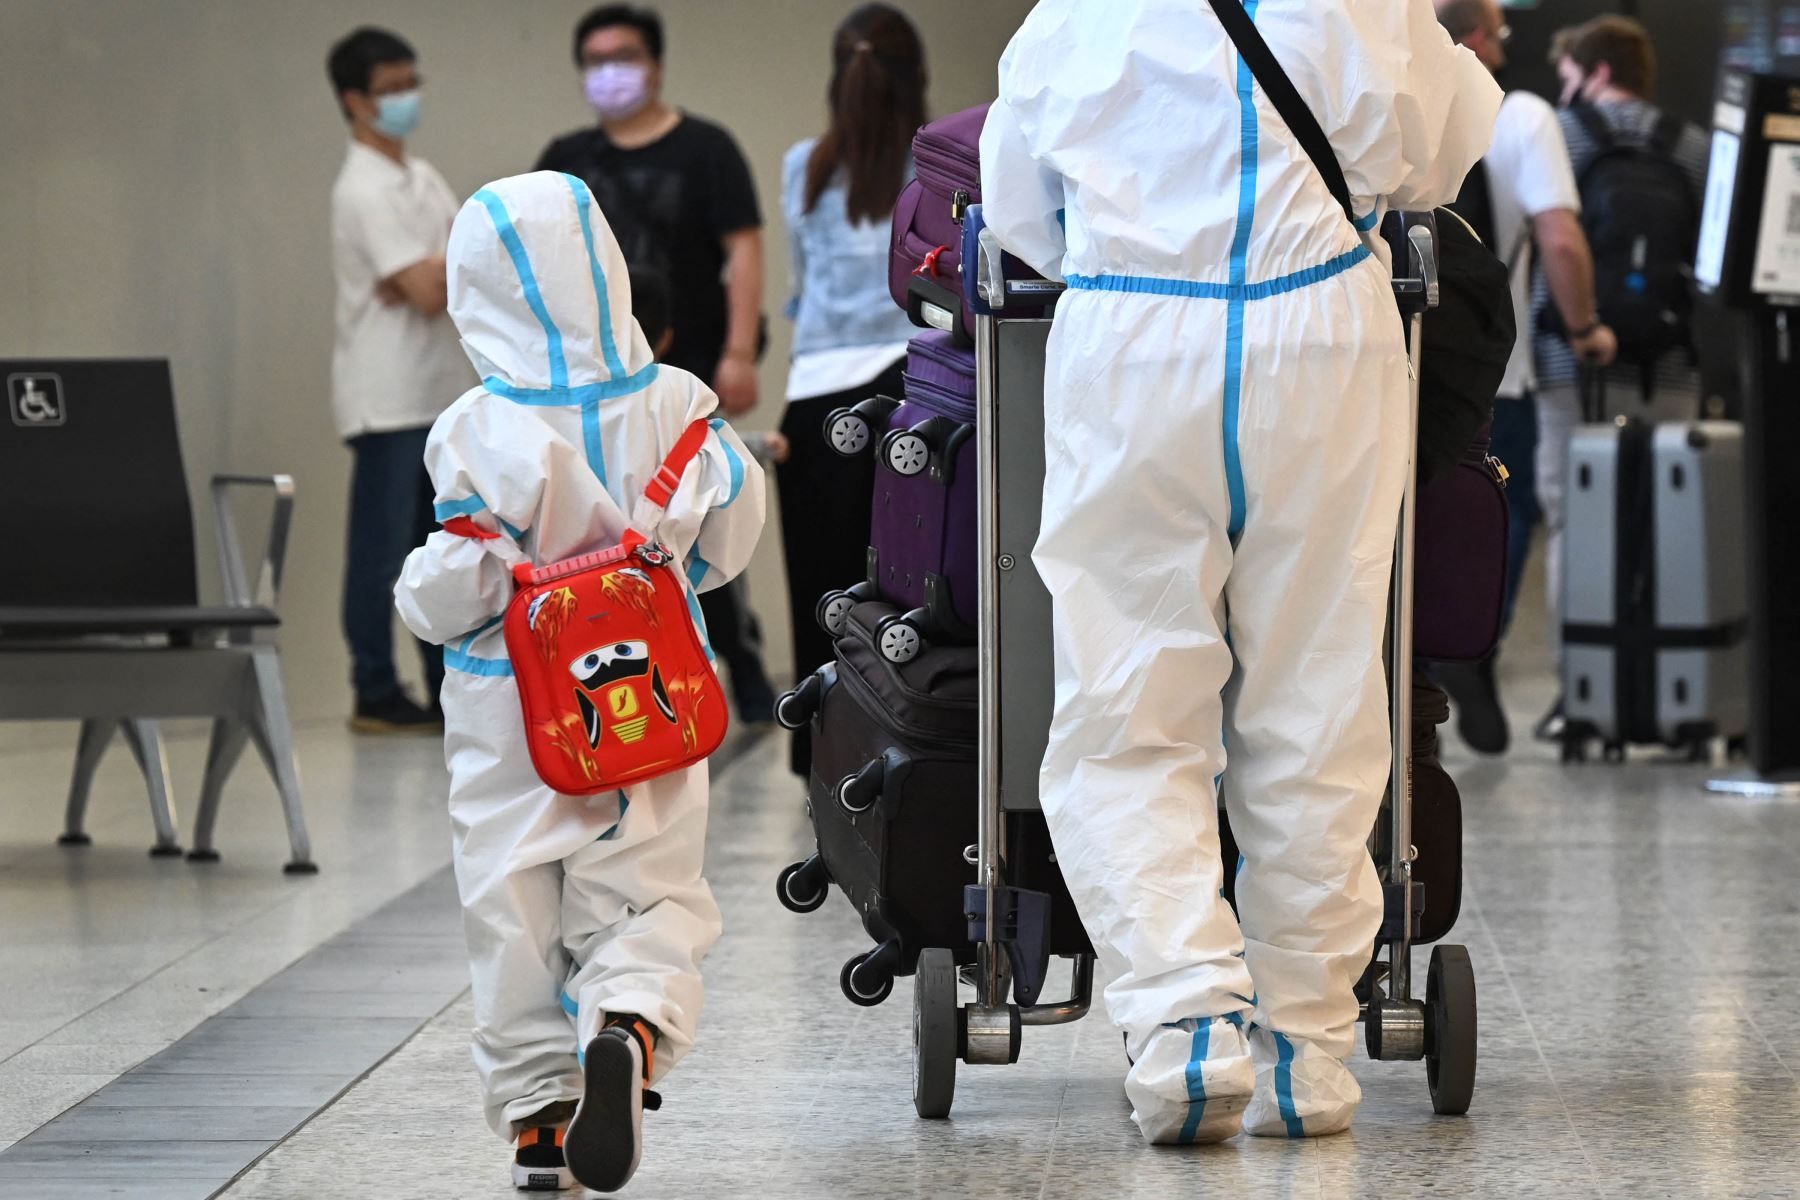 Viajeros internacionales llegan al aeropuerto Tullamarine de Melbourne  cuando Australia registra sus primeros casos de la variante Omicron de Covid-19. Foto: AFP